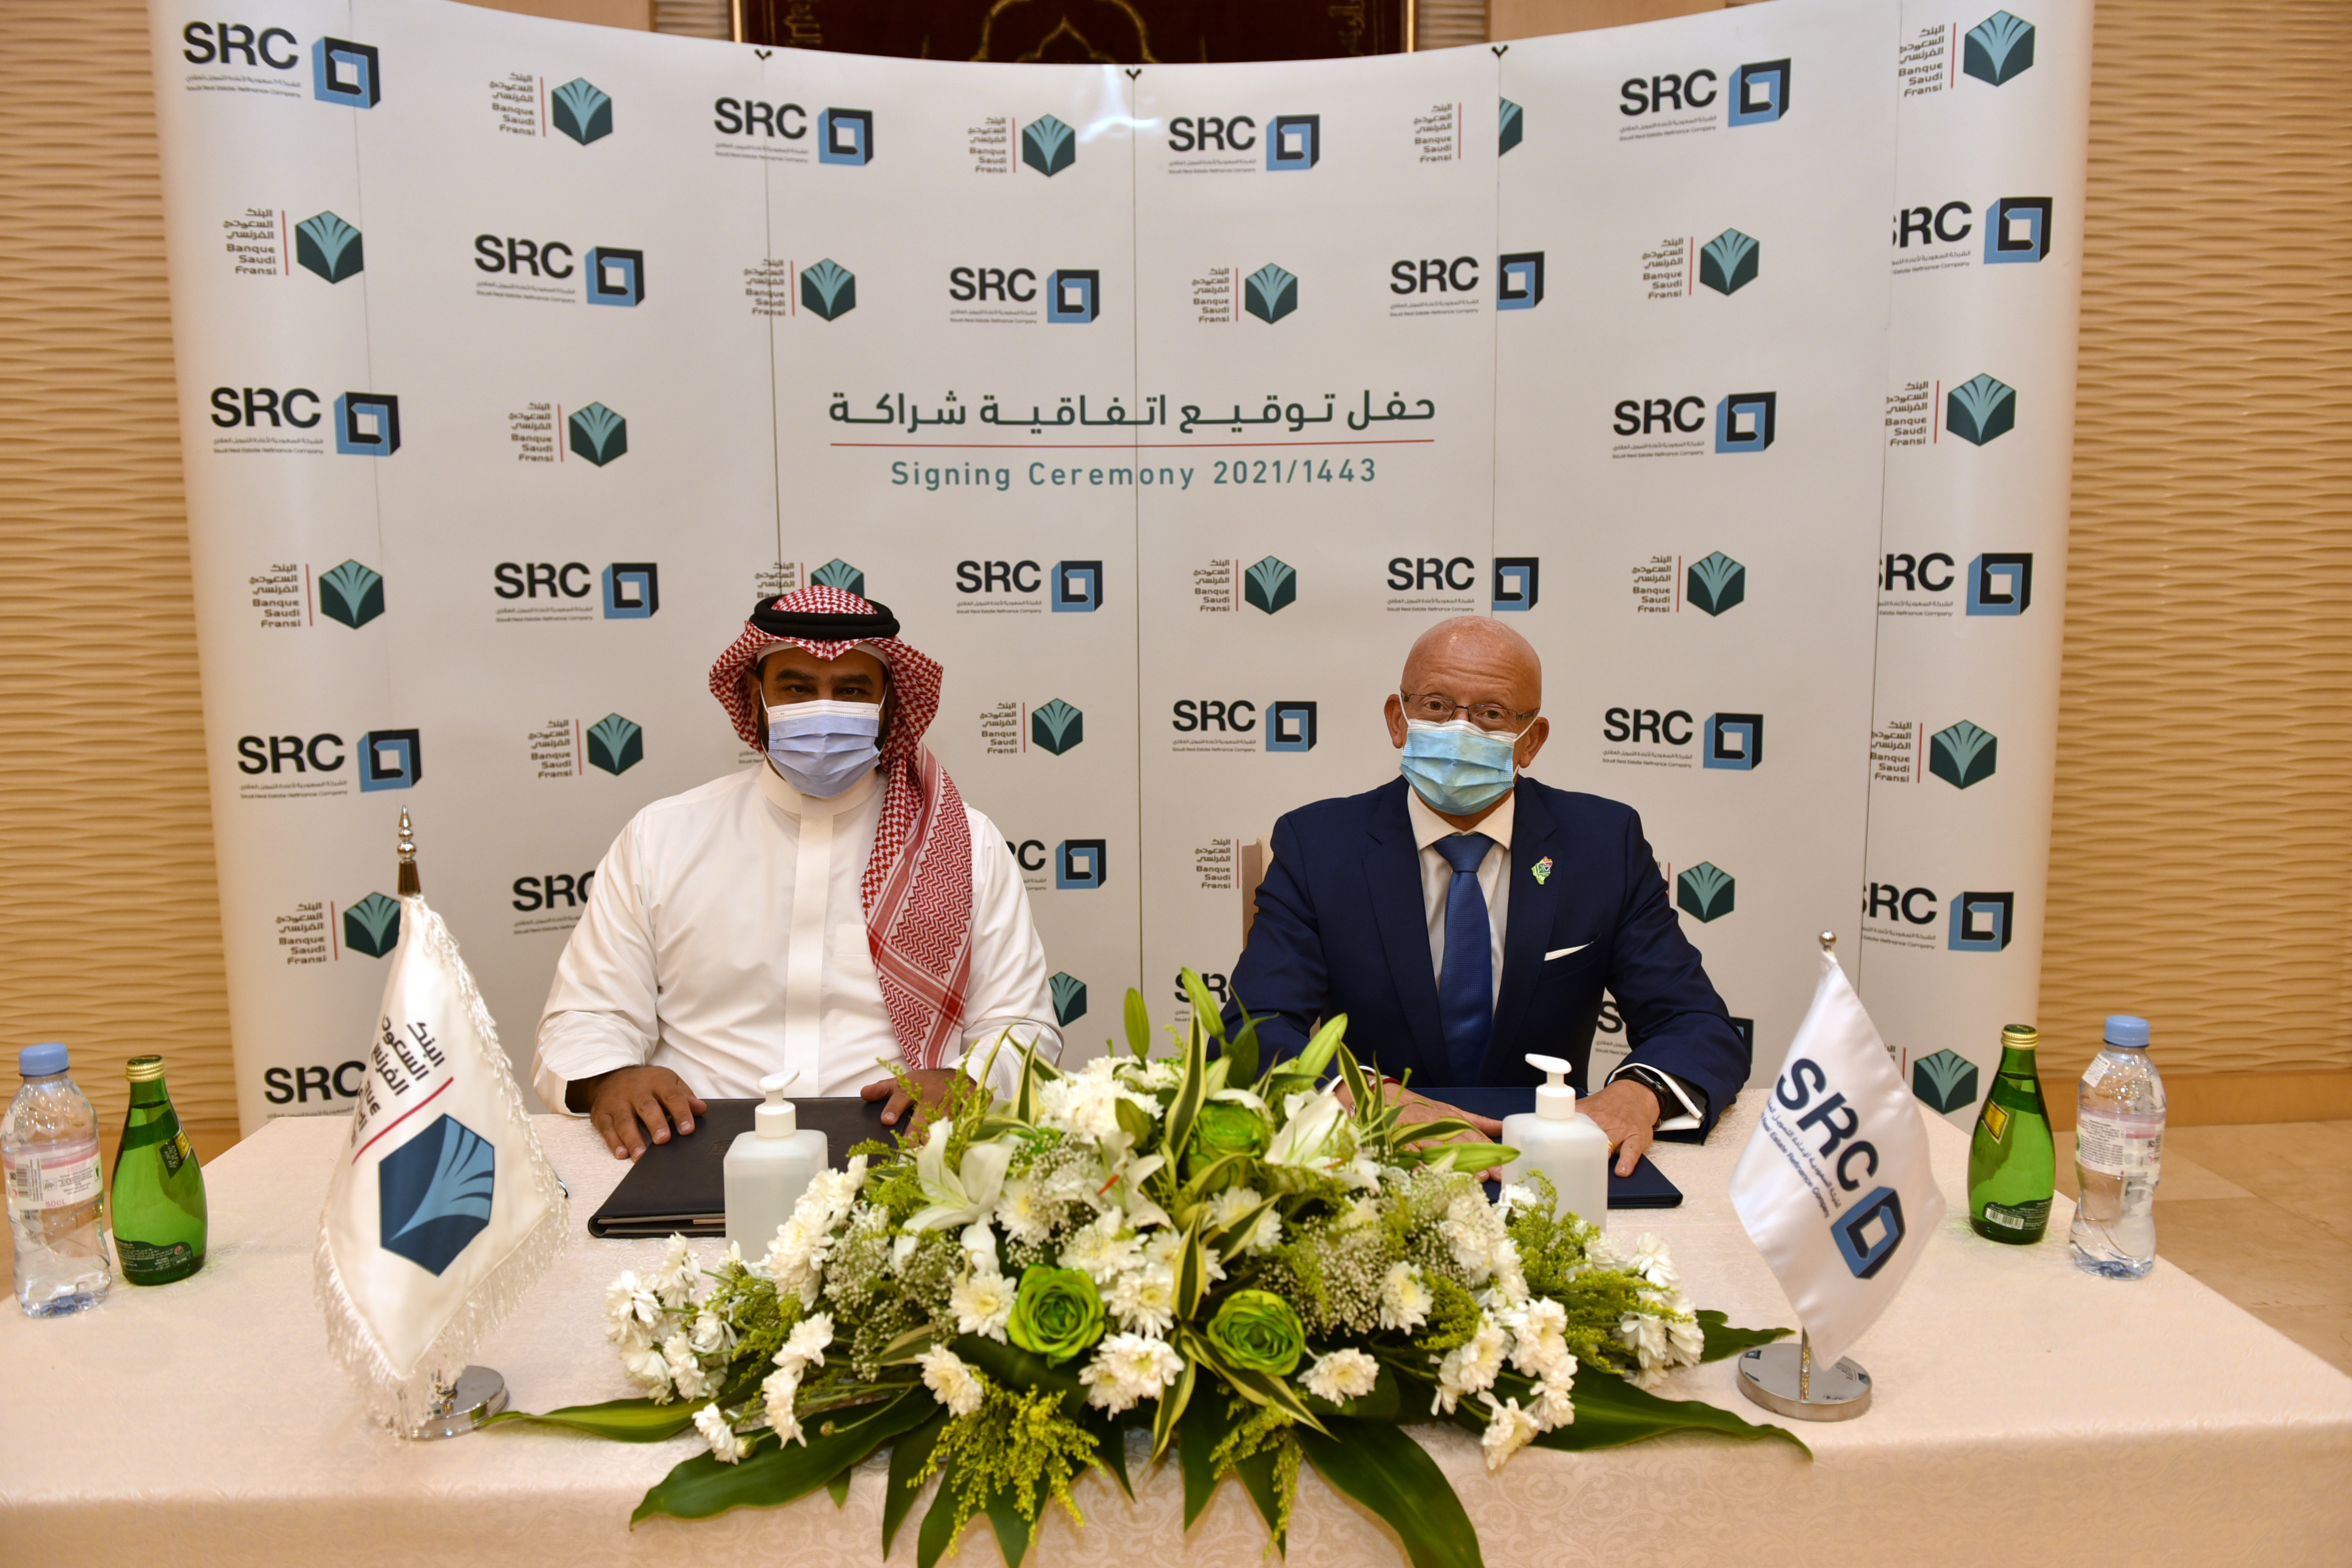 "السعودية لإعادة التمويل"(SRC) و"البنك الفرنسي" يوقعان اتفاقية ثانية لشراء محفظة تمويلية